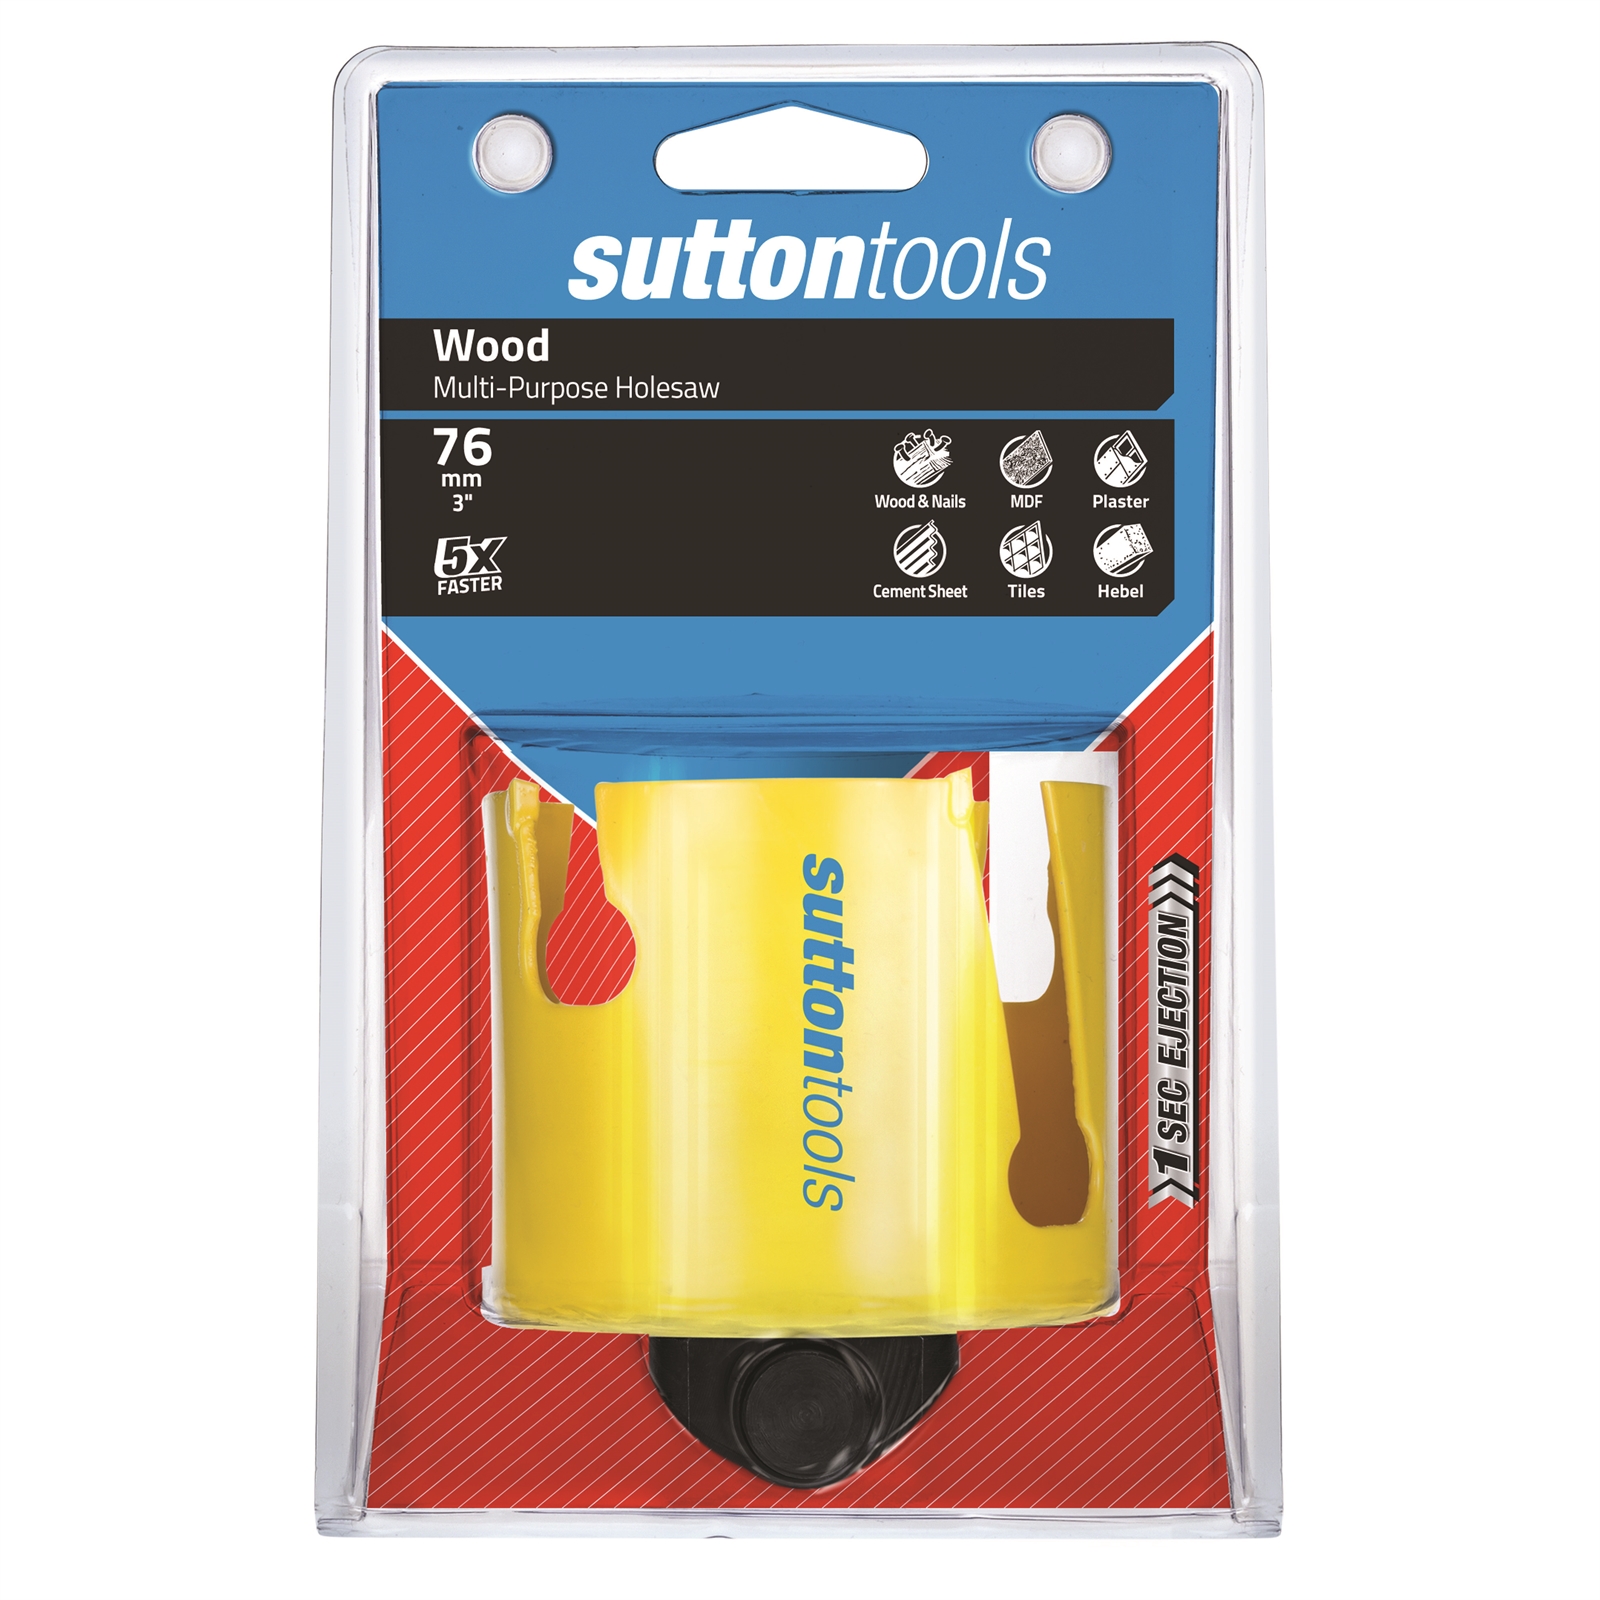 Sutton Tools 76mm Multipurpose Holesaw